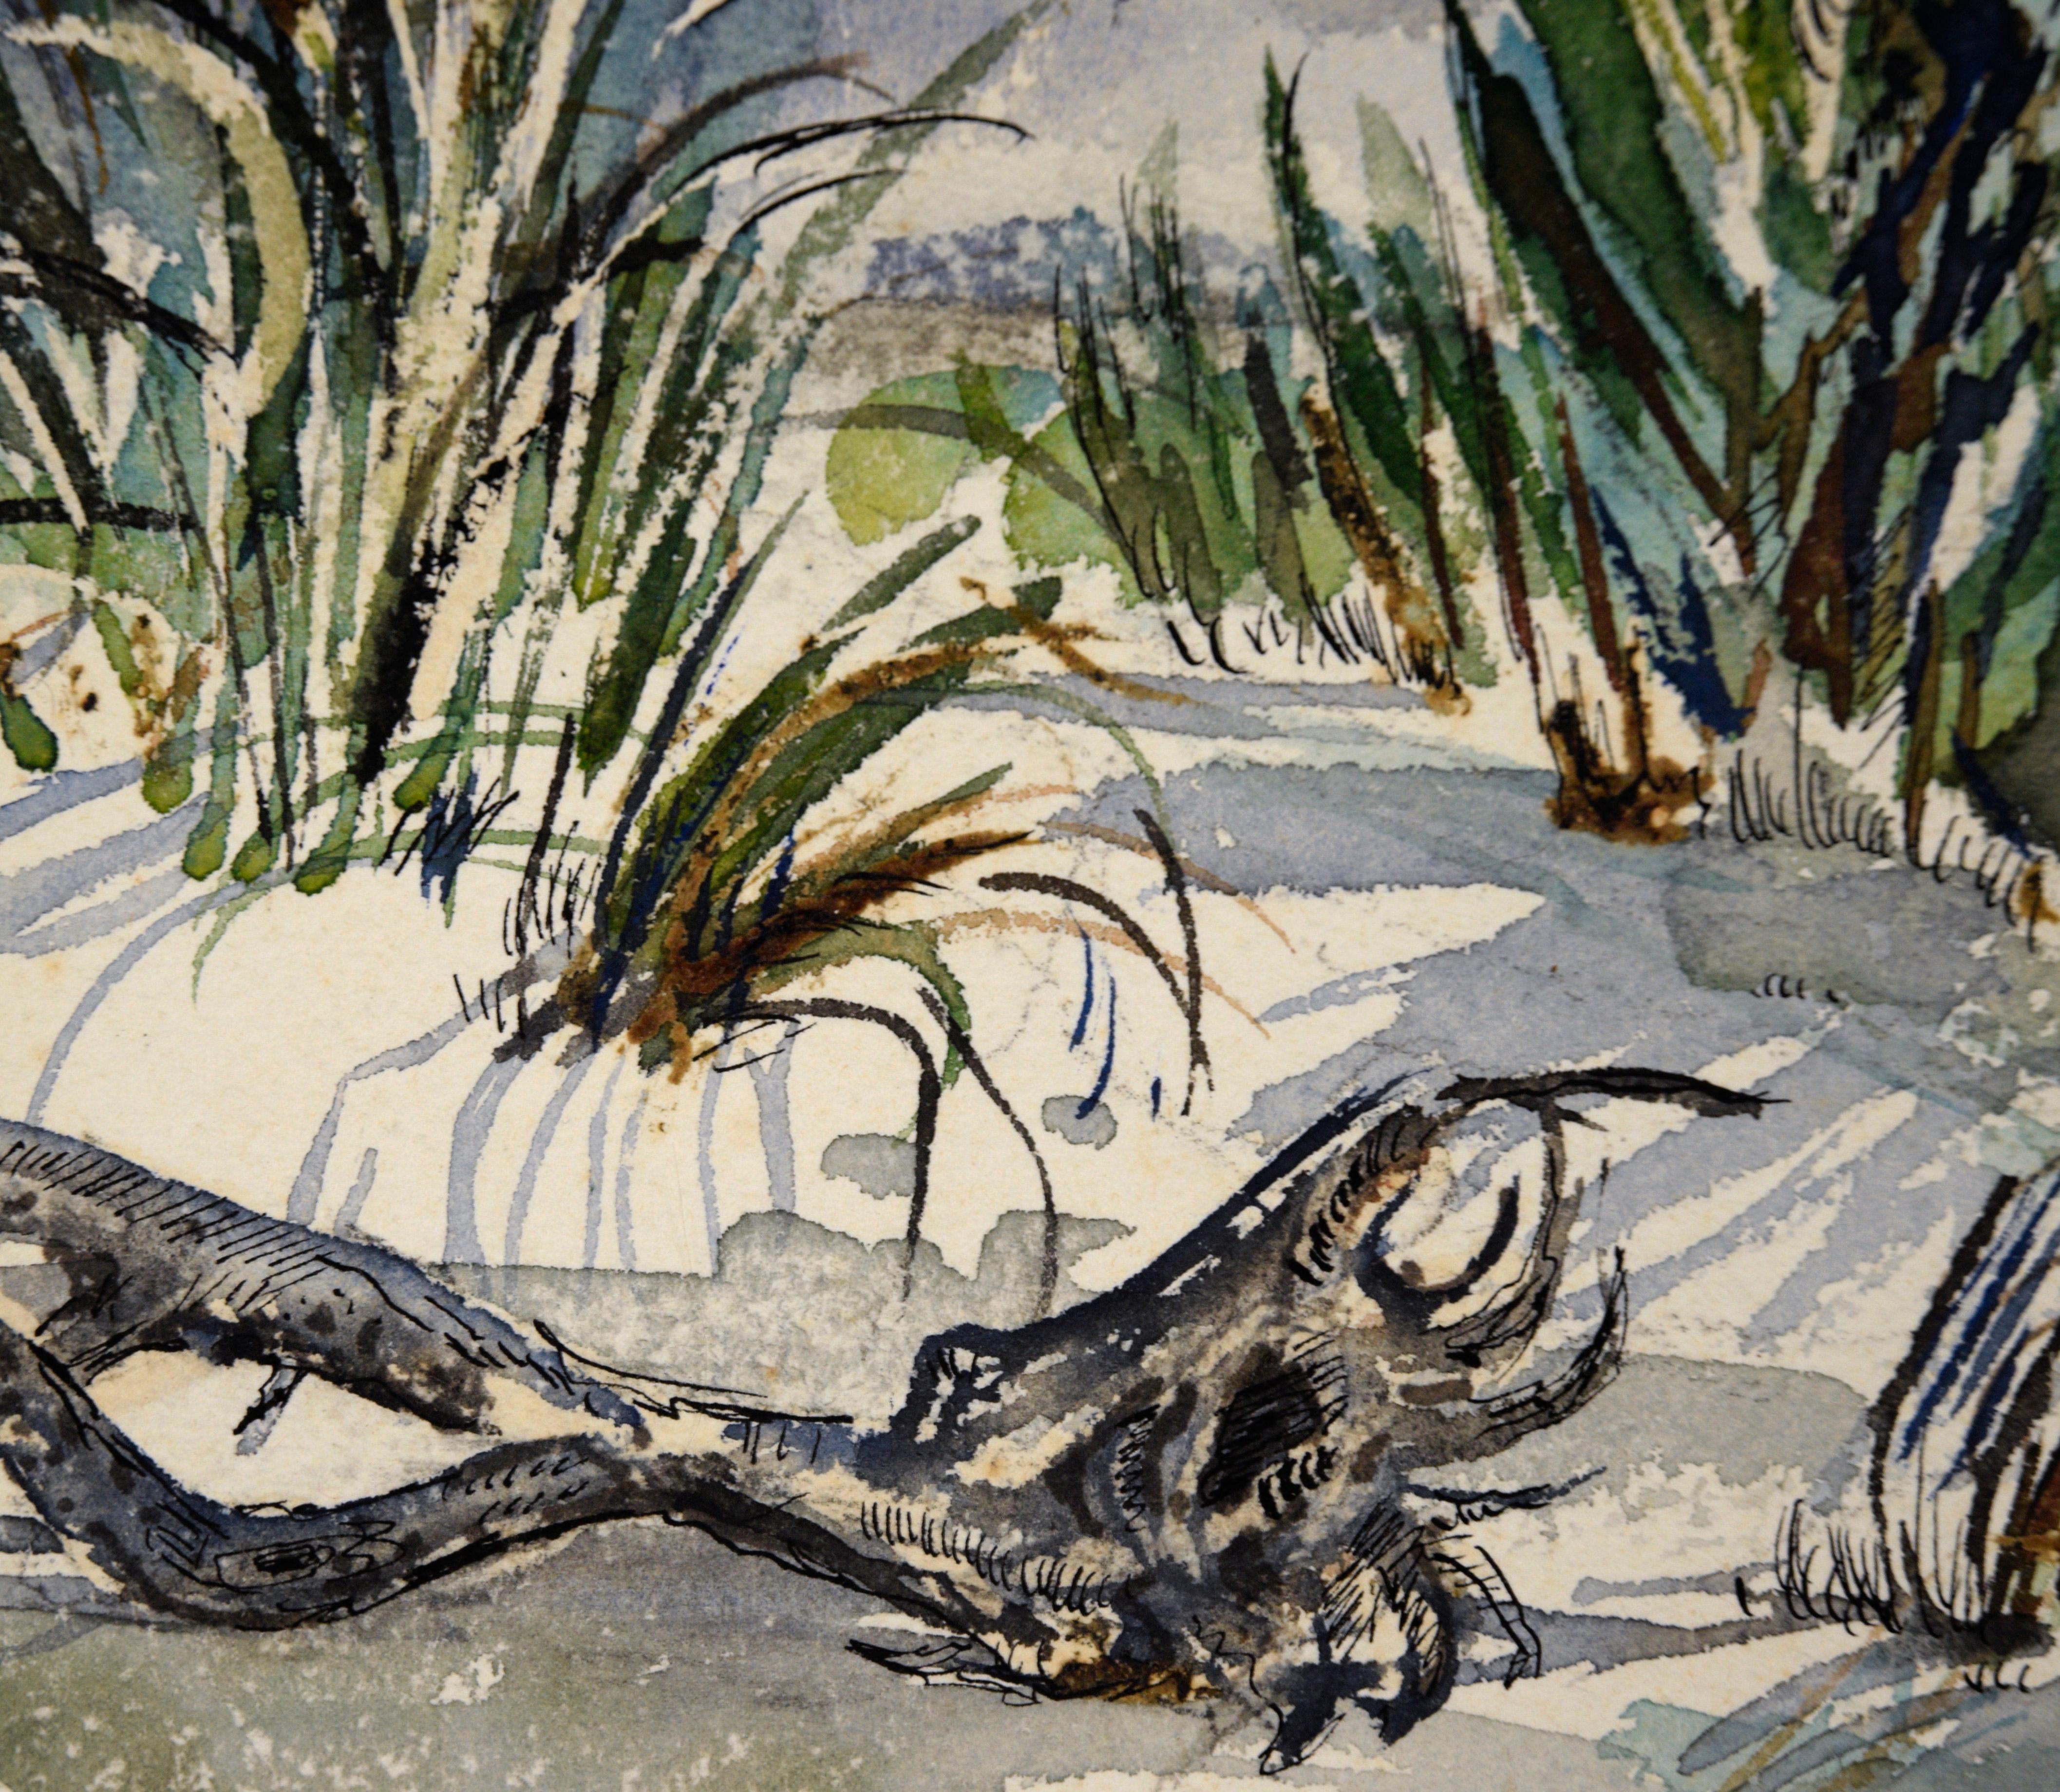 Captiva-Insel, Florida – Strandlandschaft in Aquarell auf Papier

Detailliertes Aquarell eines Inselstrandes in Florida von dem unbekannten Künstler 